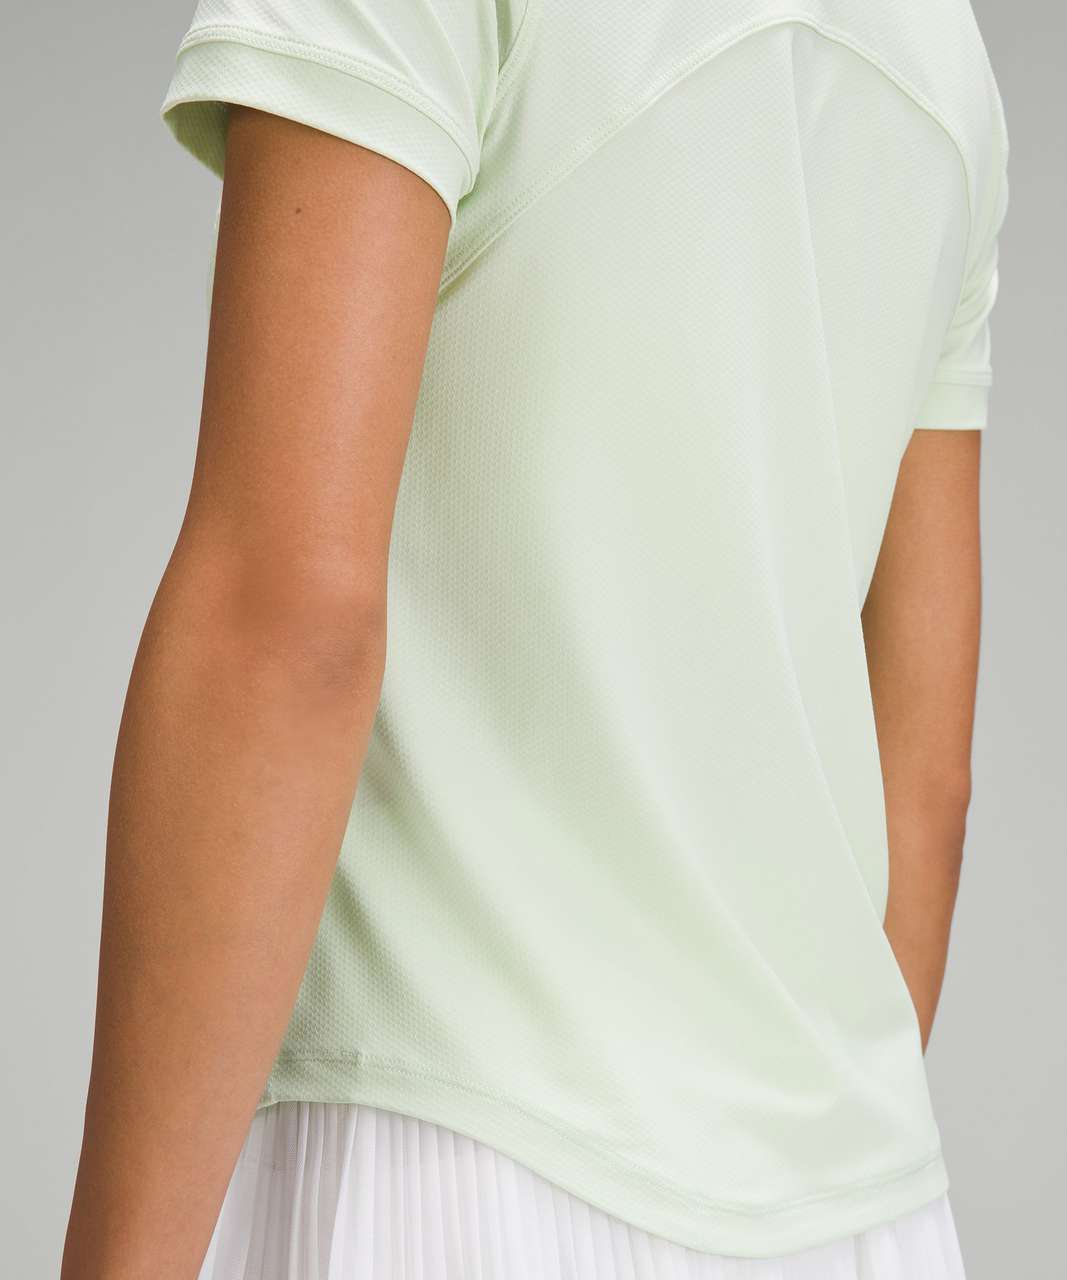 Lululemon Quick-Dry Short-Sleeve Polo Shirt - Kohlrabi Green